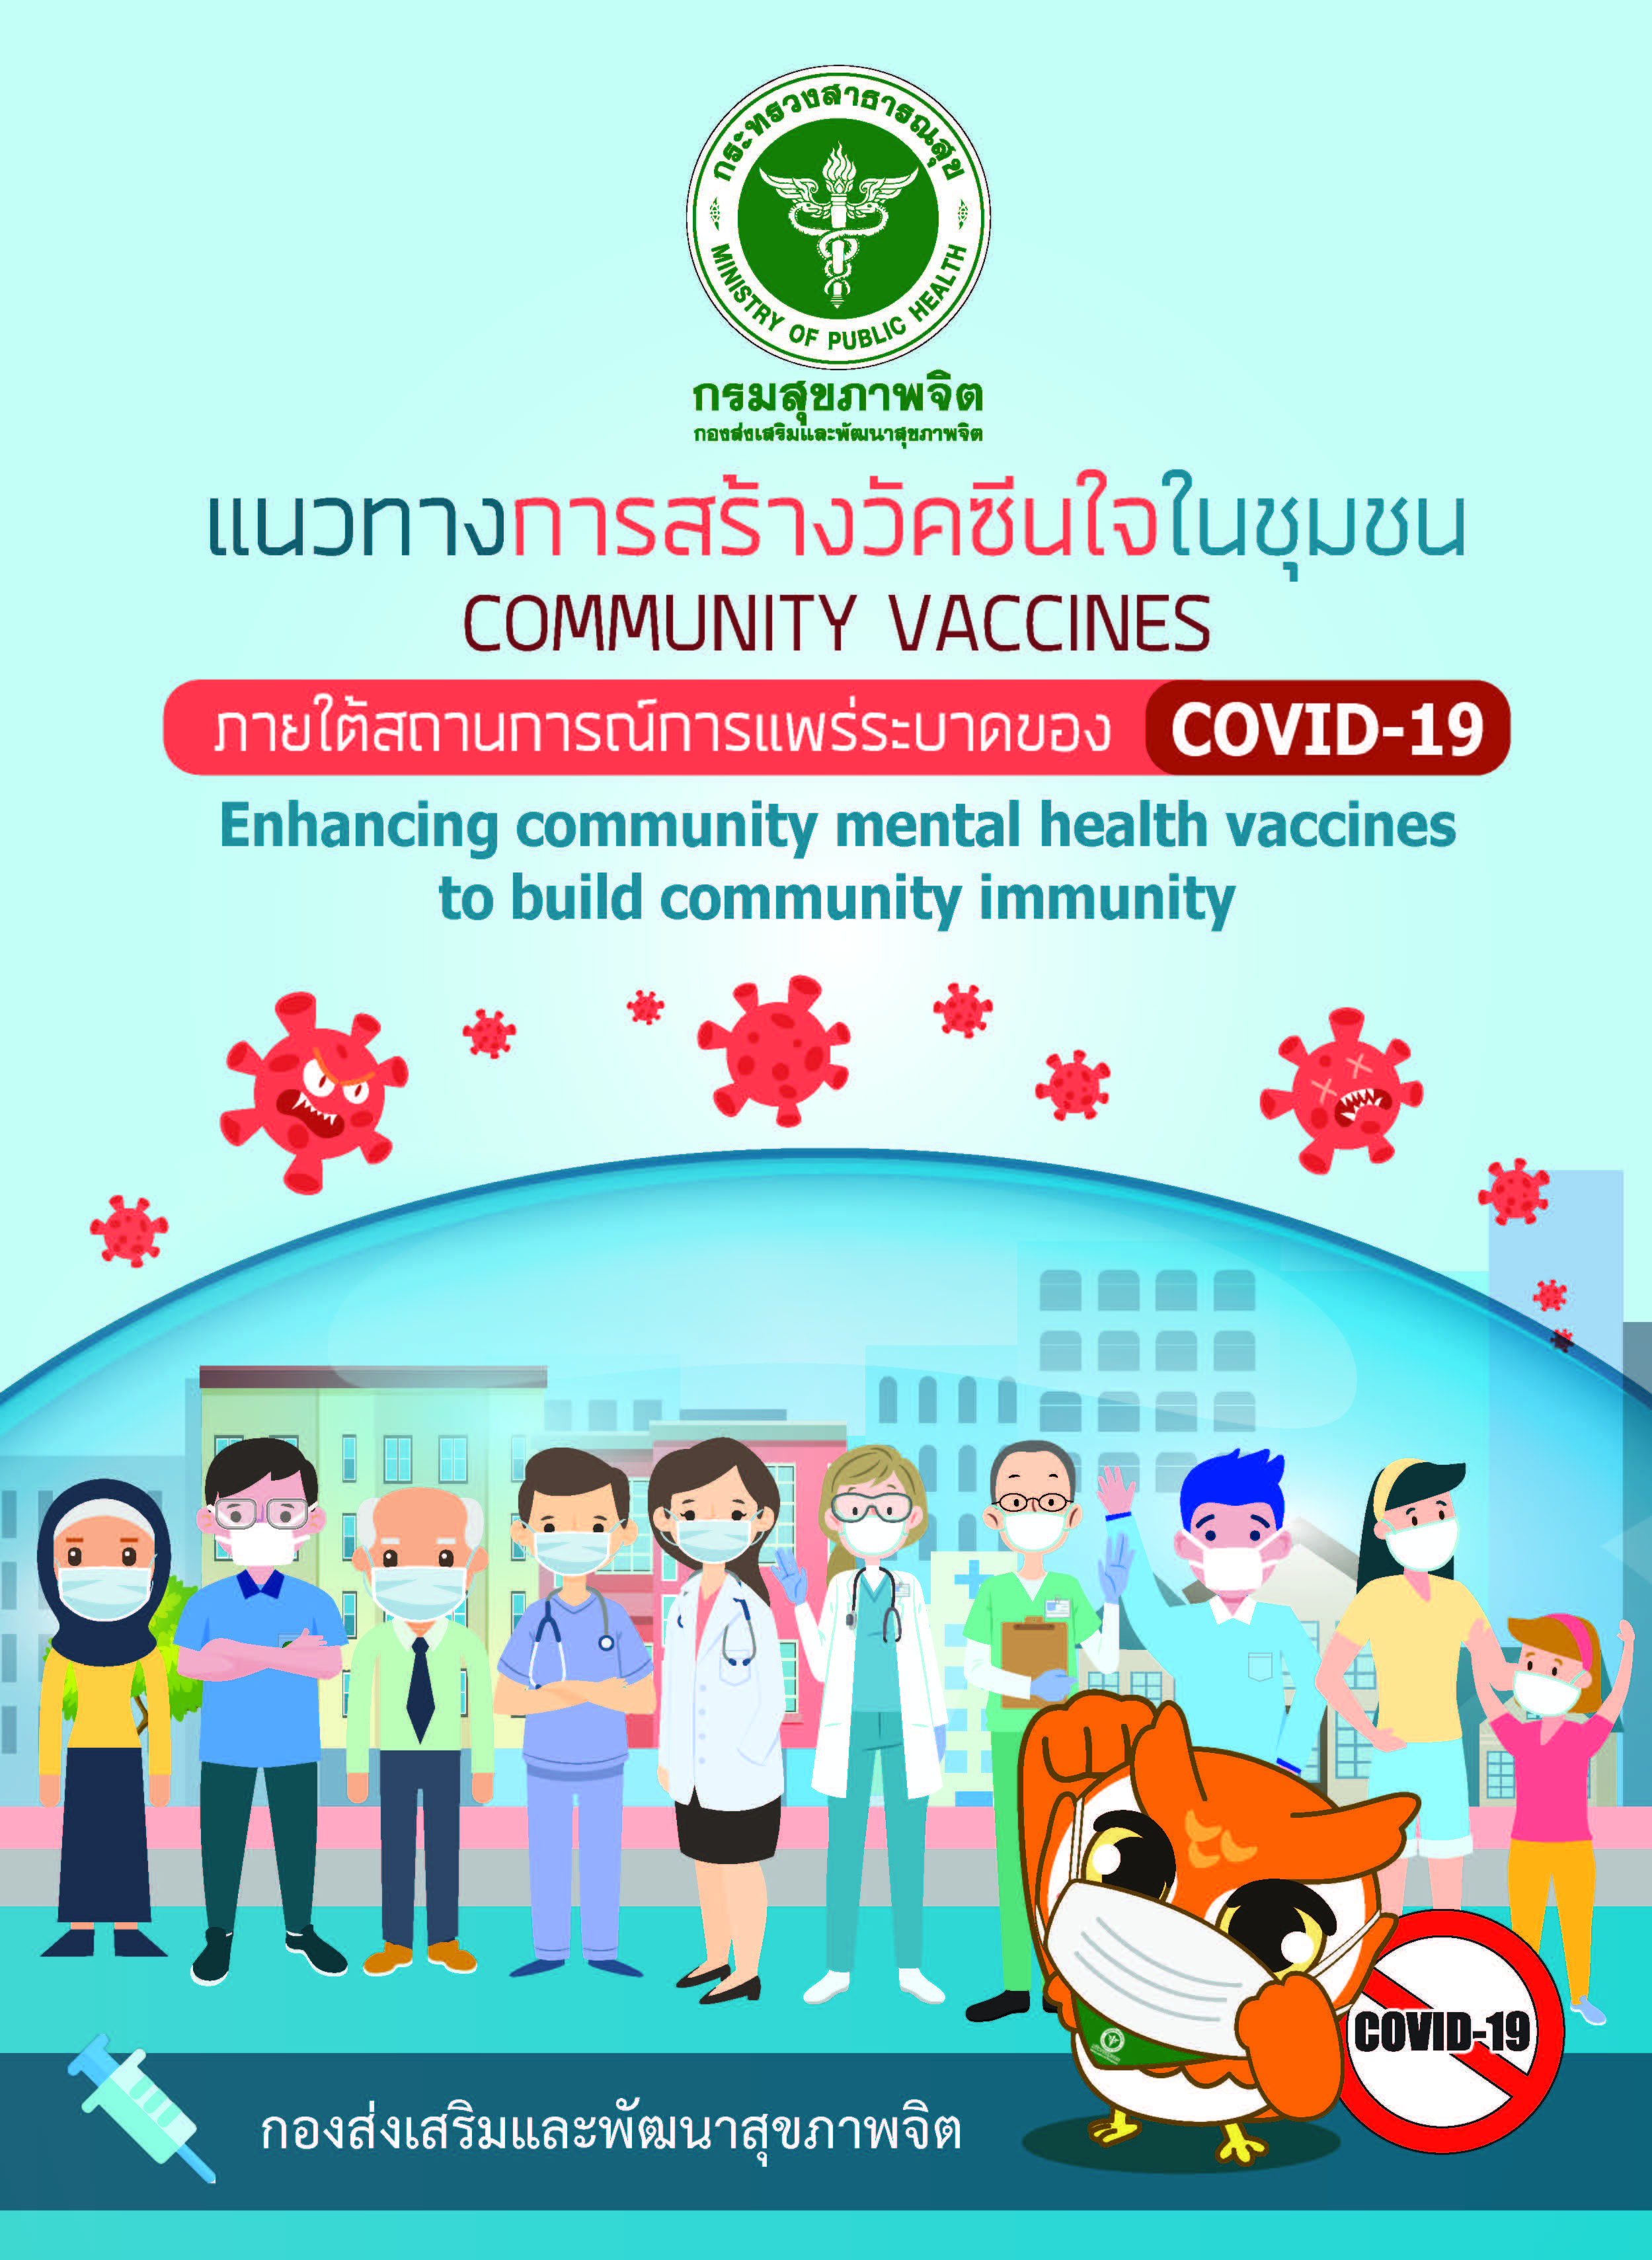 แนวทางการสร้างวัคซีนใจในชุมชน (Community Vaccines) ภายใต้สถานการณ์การแพร่ระบาดของ COVID-19